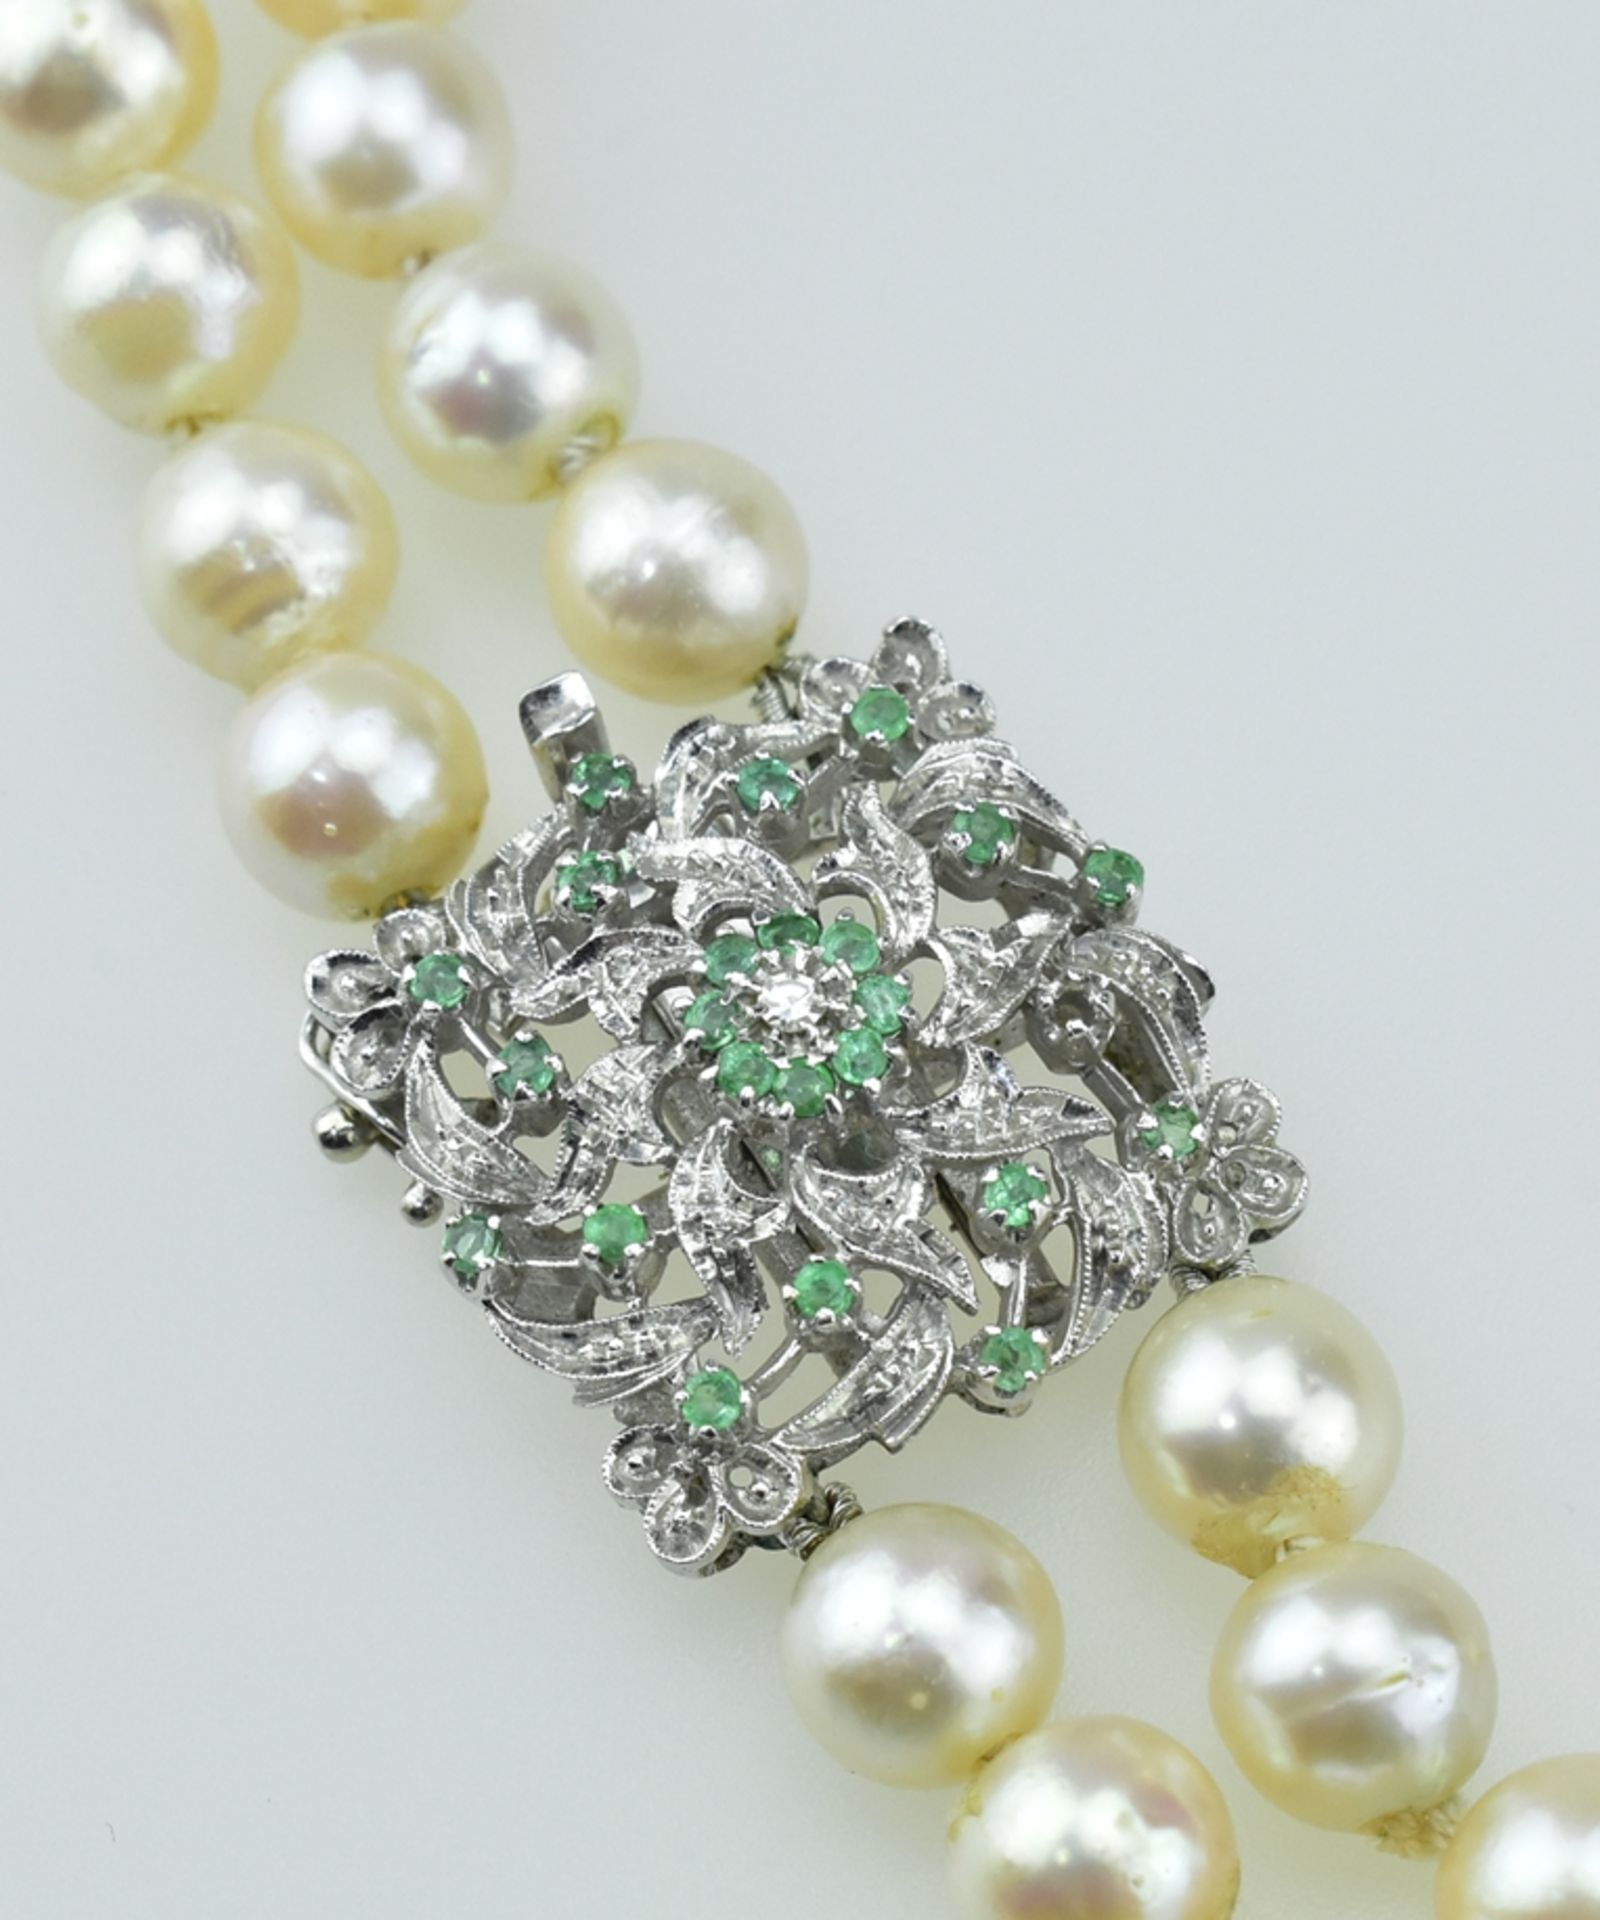 Zweireihige Perlenkette. Akoyaperlen Ø 8,5 mm. 18 ct. WG-Schloß mit kleinen Smaragden. L 49 cm - Image 2 of 2